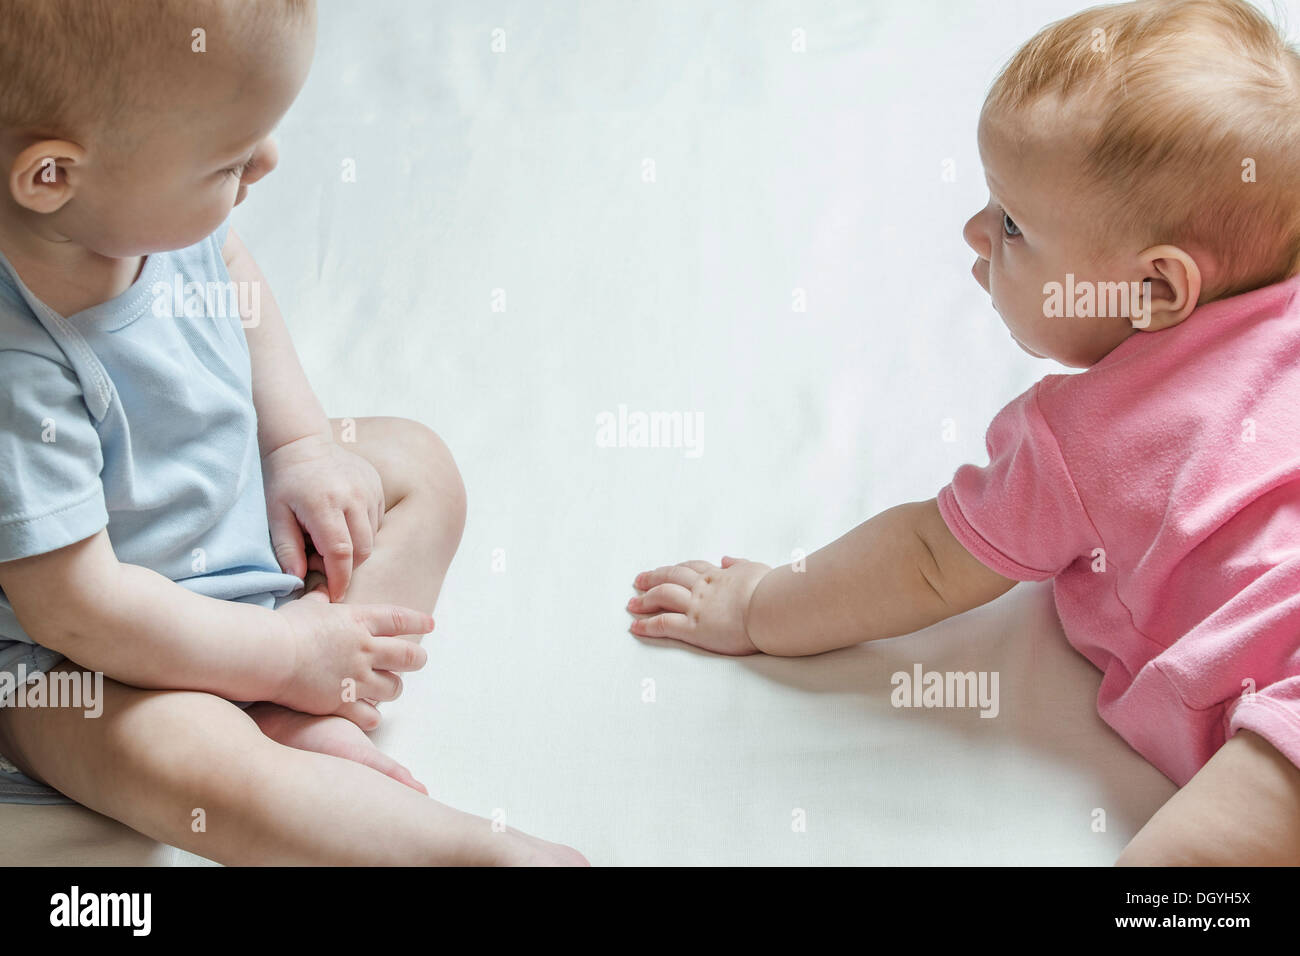 Zwei Babys sahen einander neugierig Stockfoto